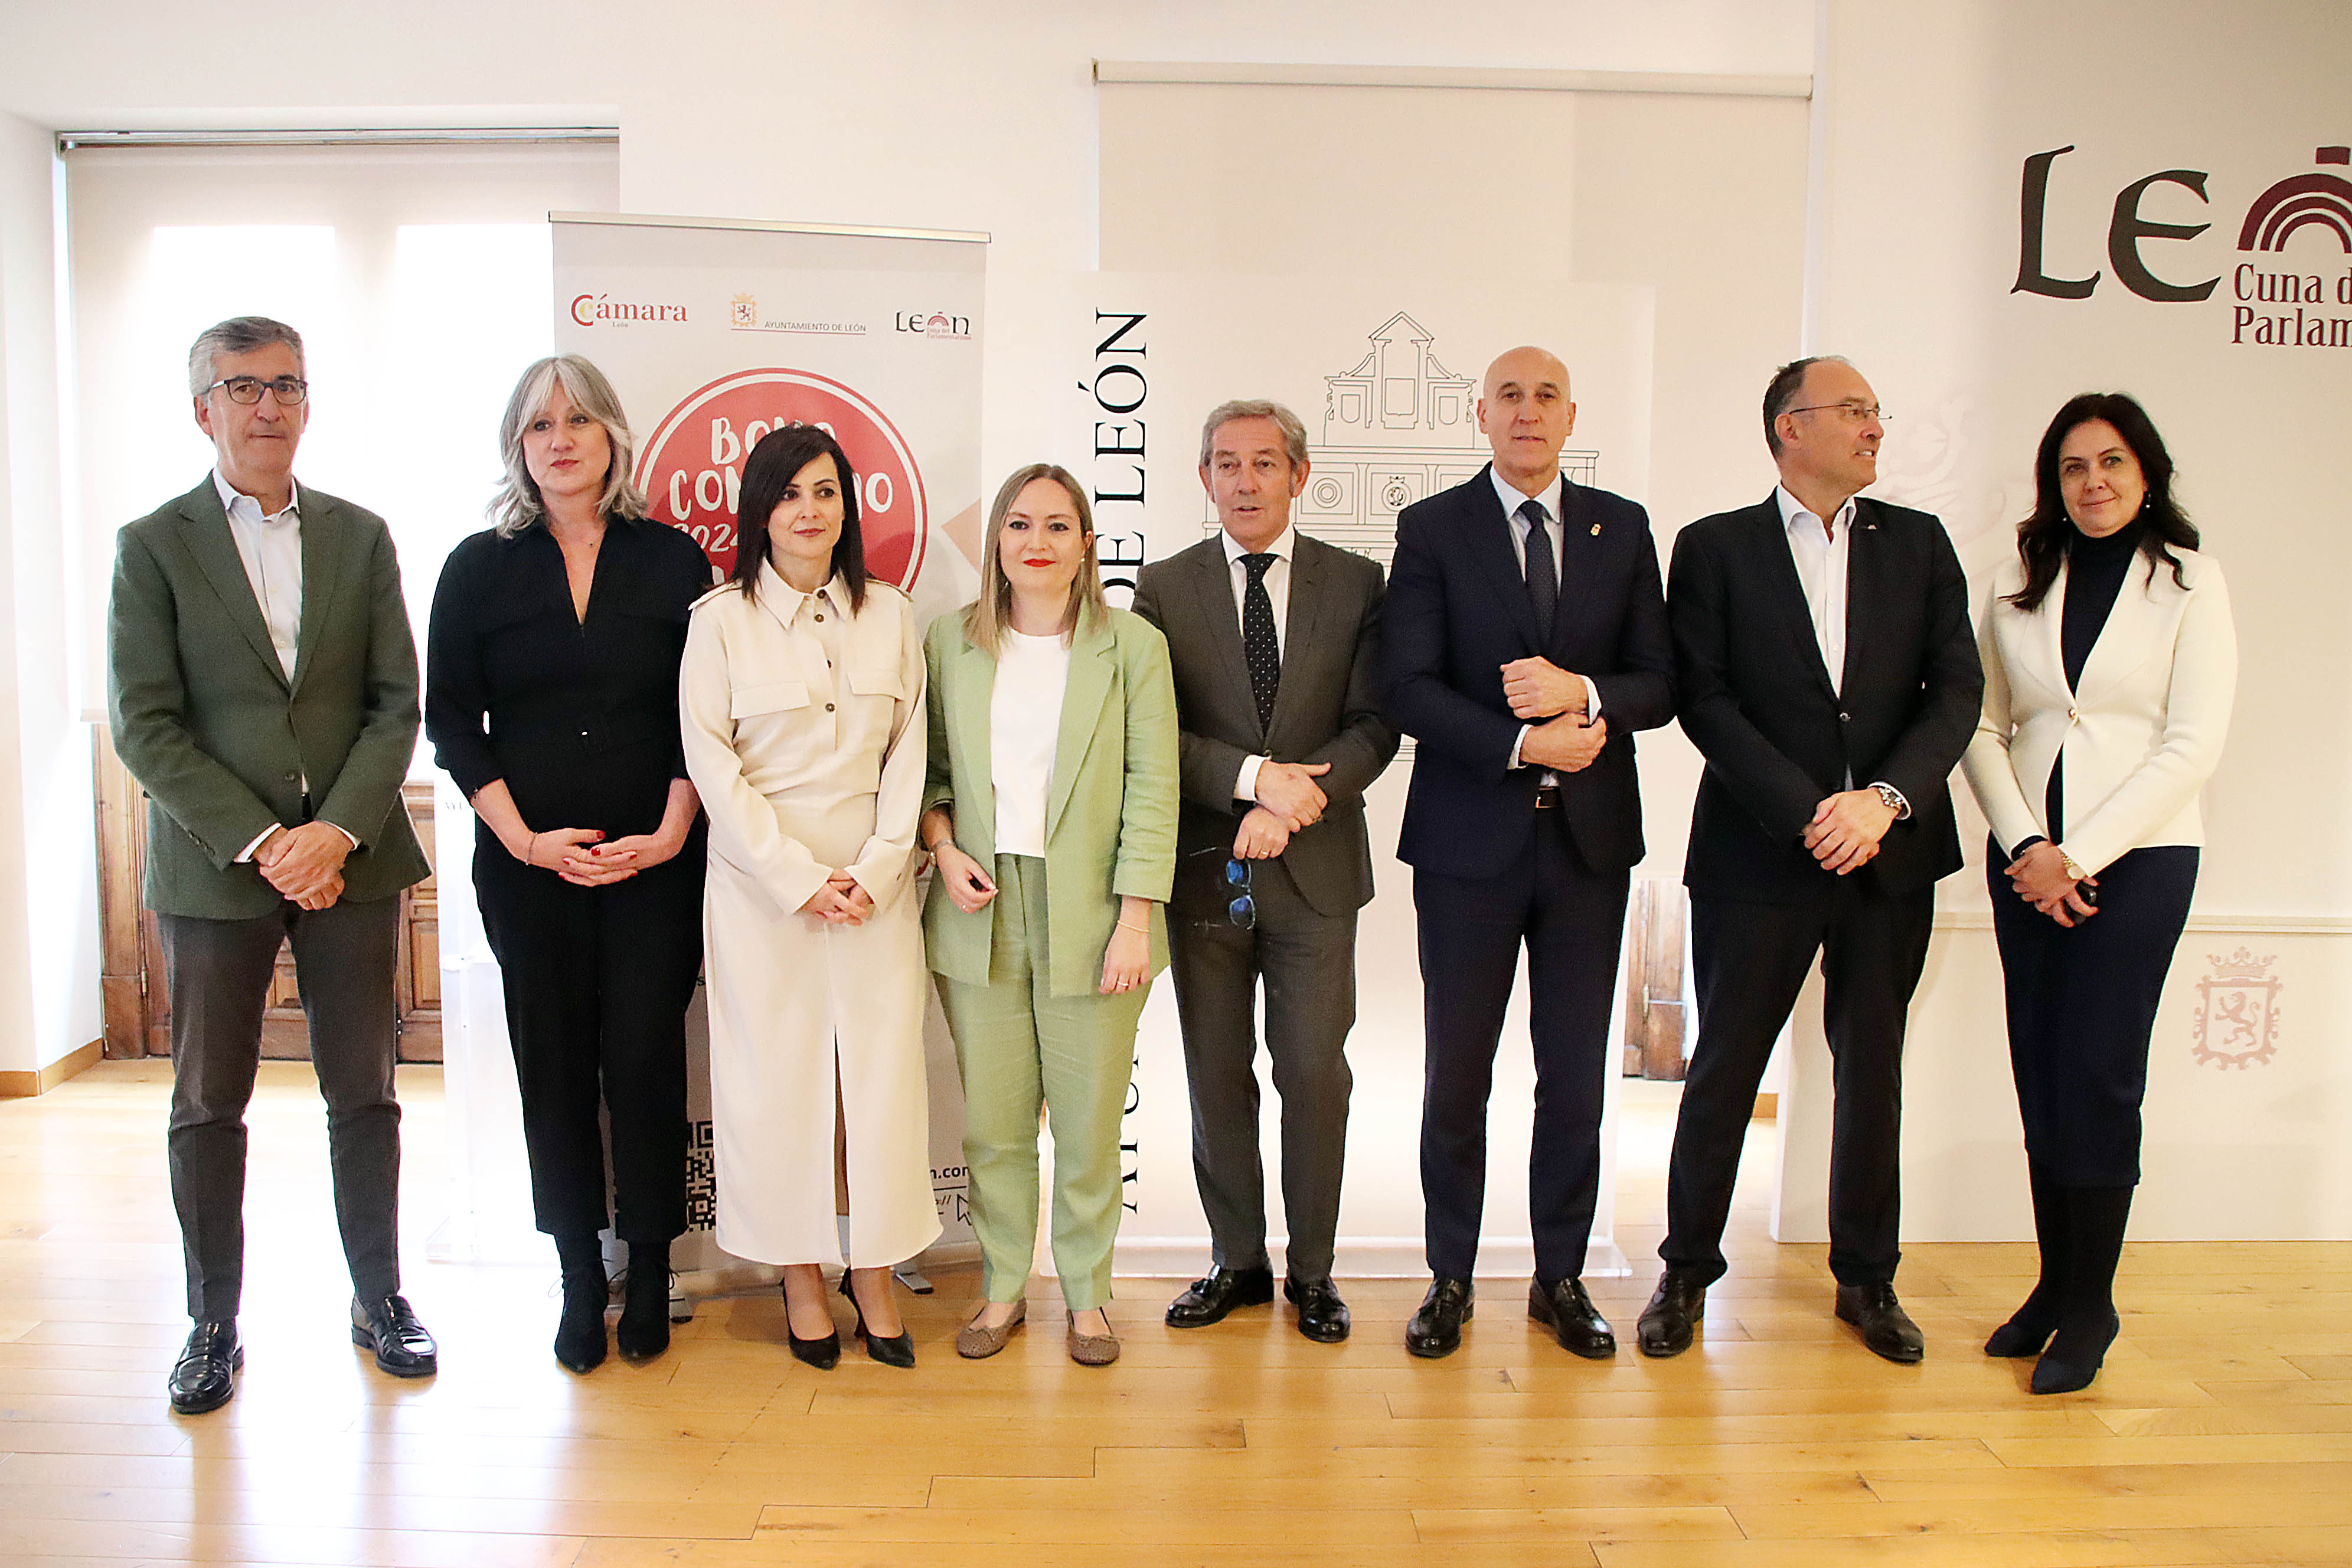 Unicaja colabora con el Ayuntamiento y la Cámara de Comercio de León en una campaña de Bonos para apoyar a los pequeños comerciantes